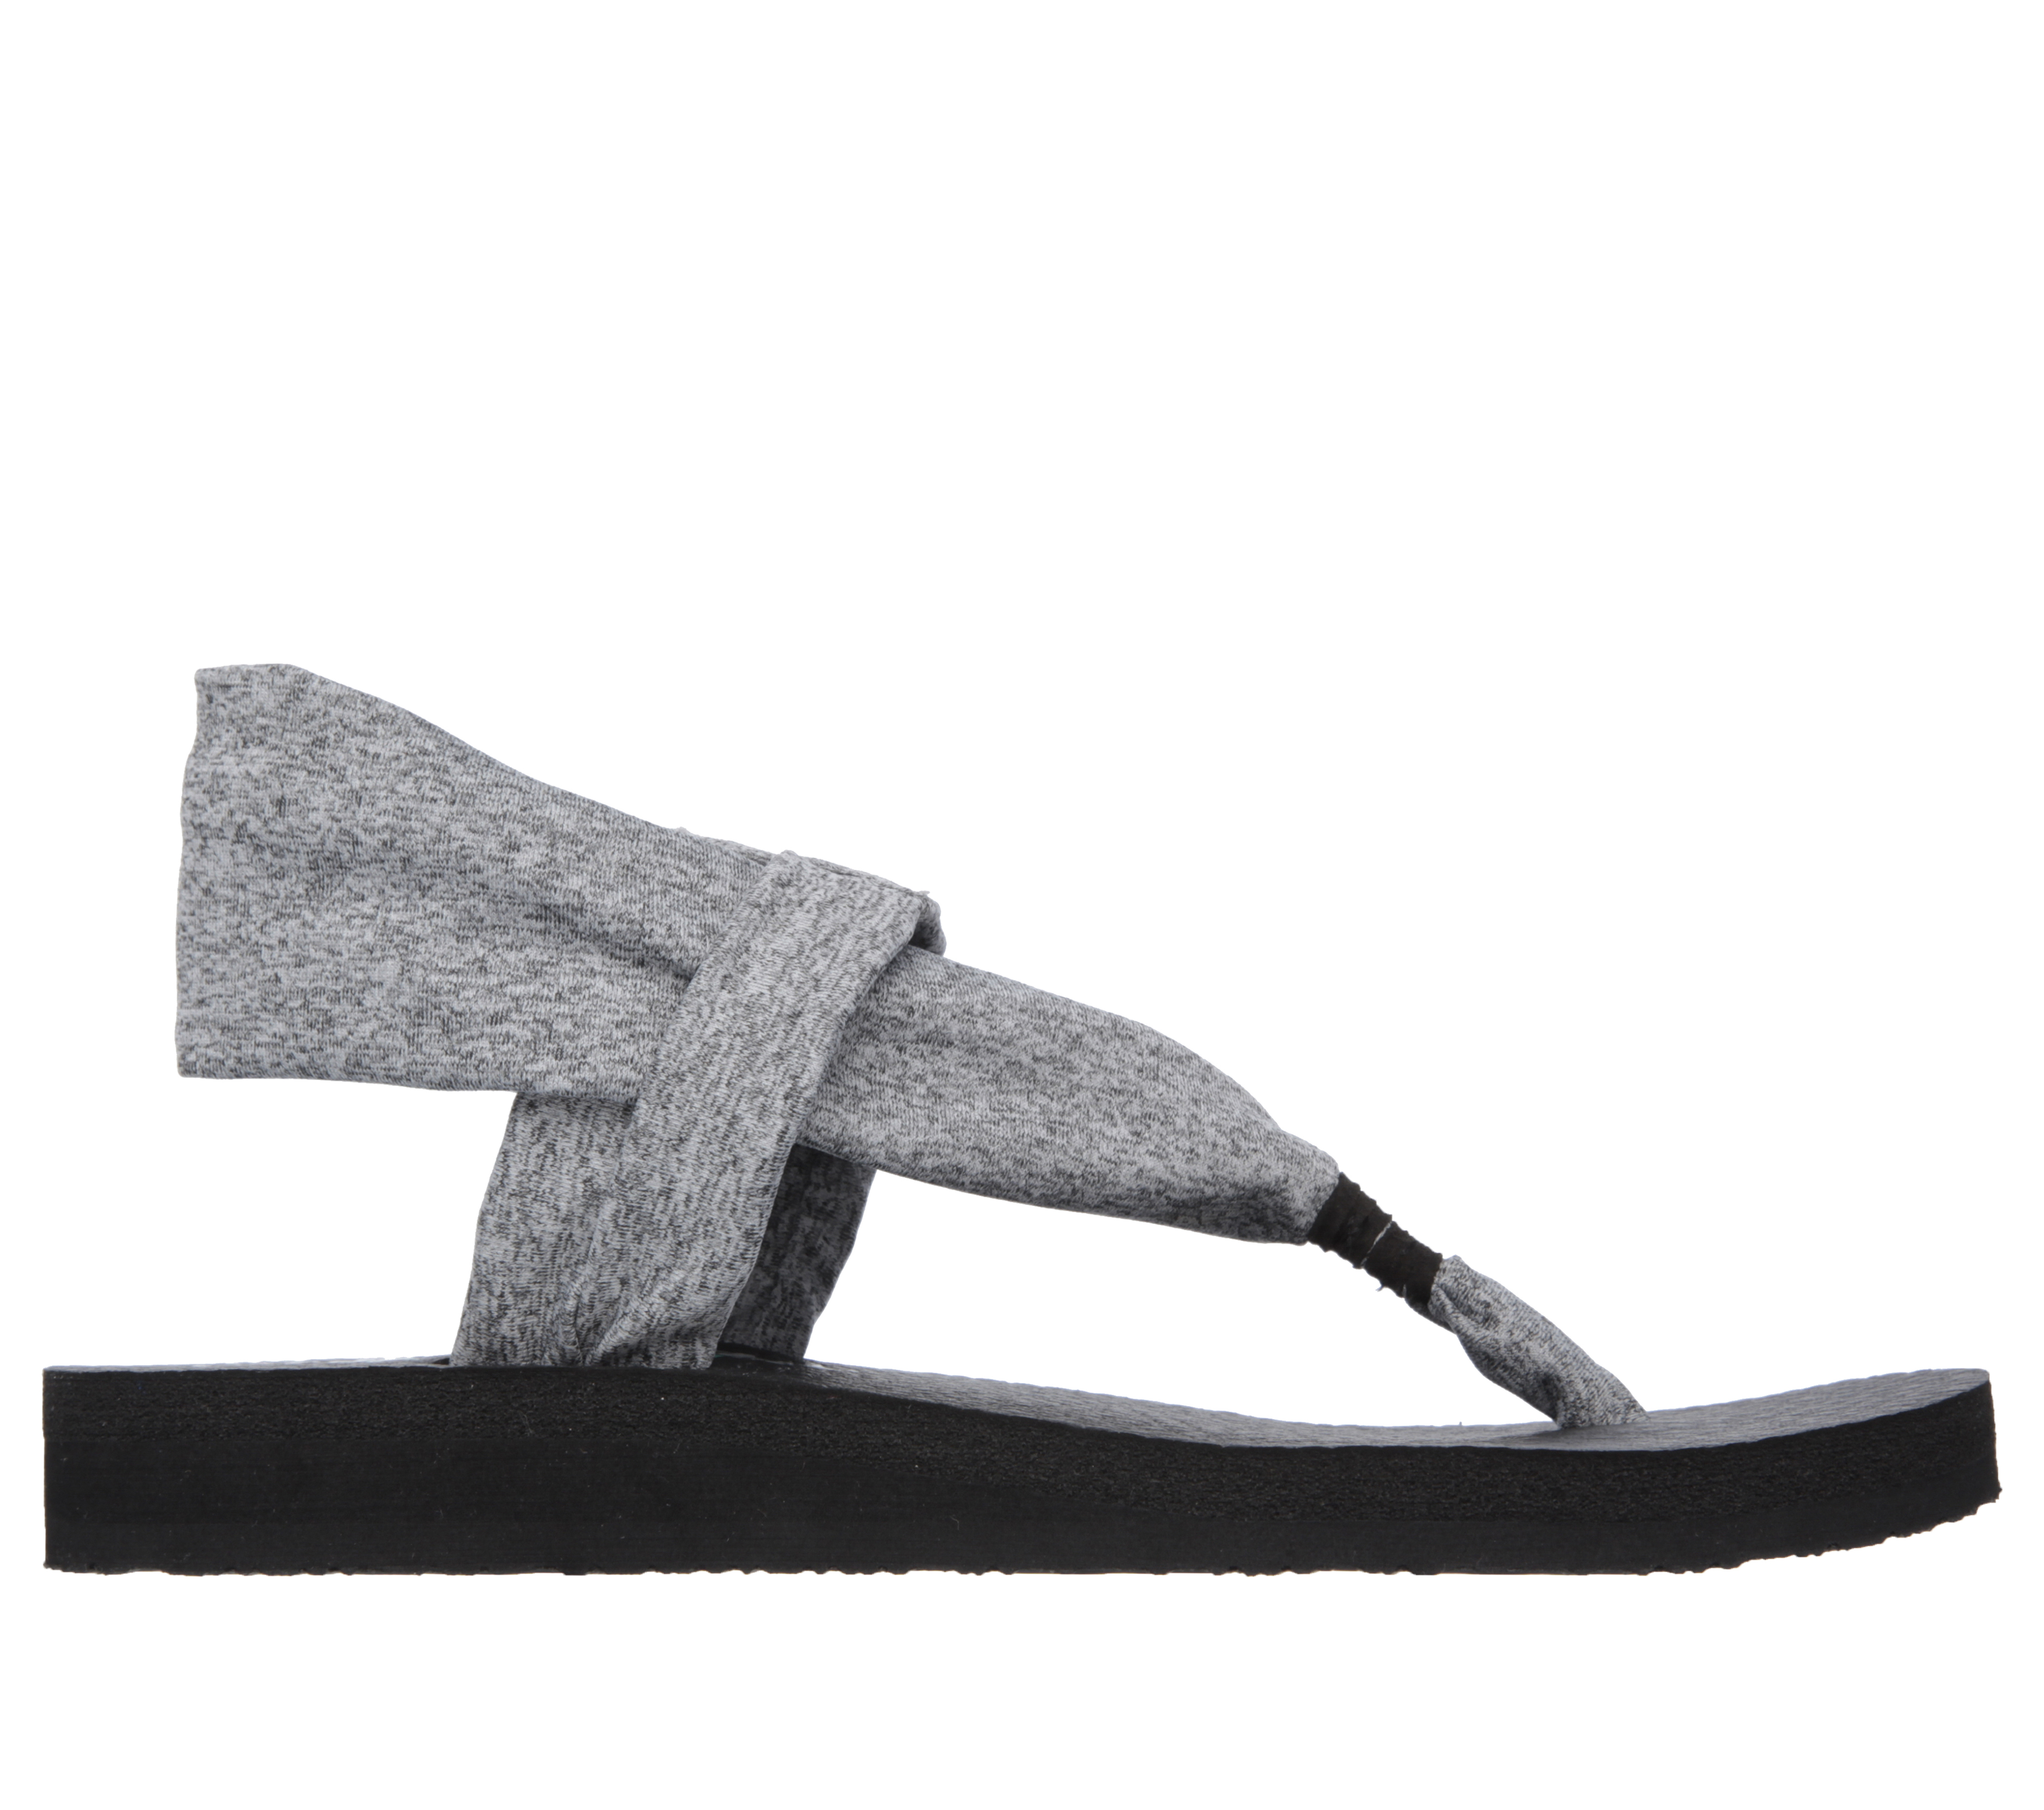 skechers women's yoga sandals